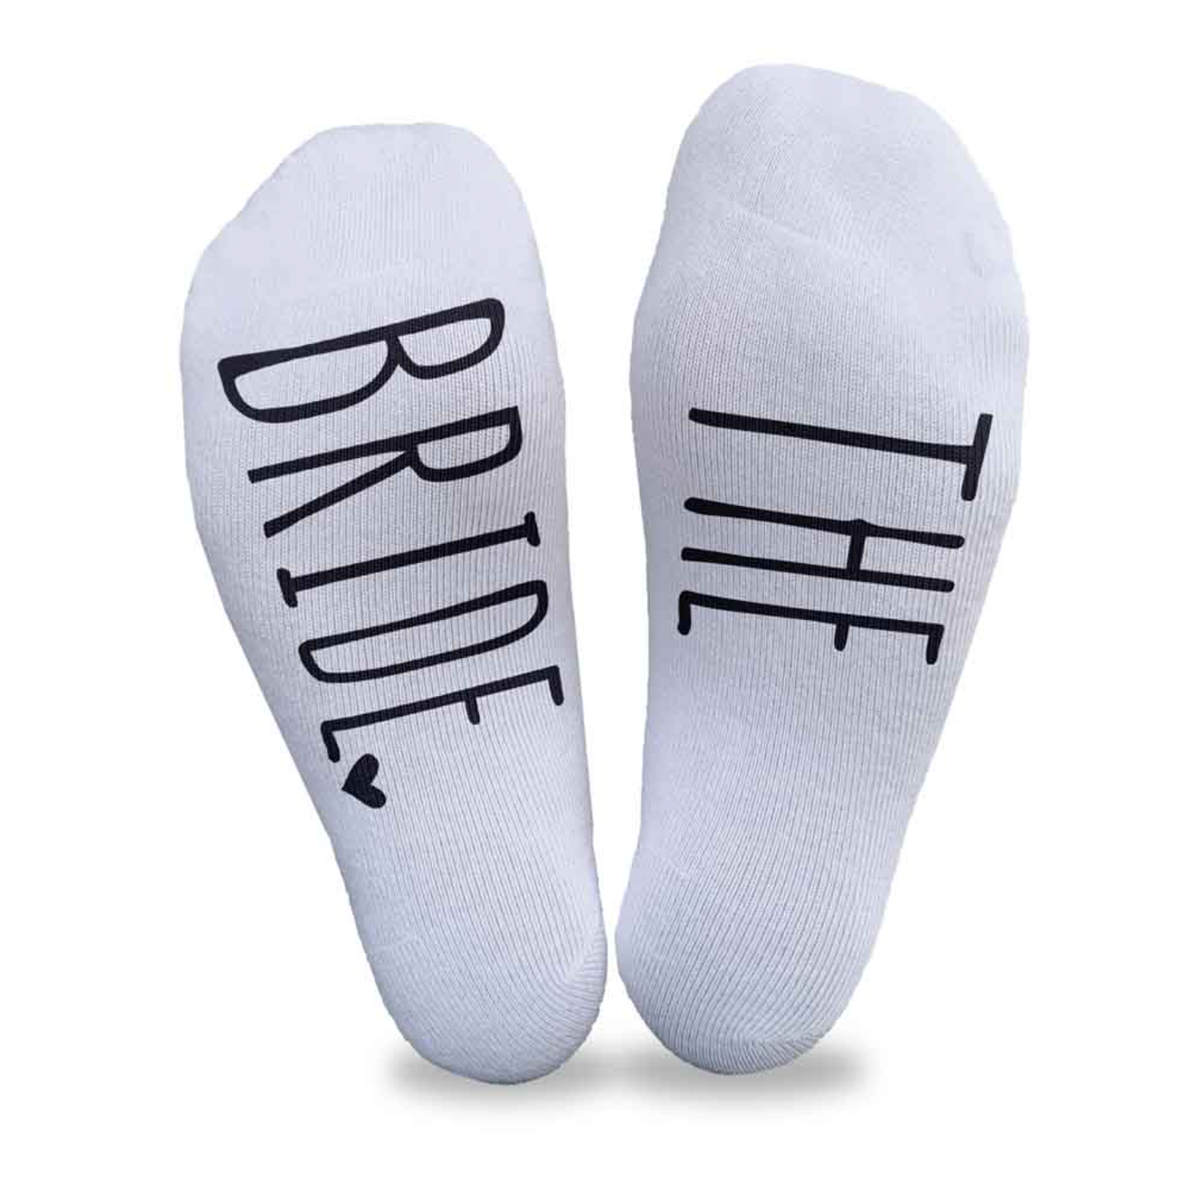 Fun Bridesmaid Socks